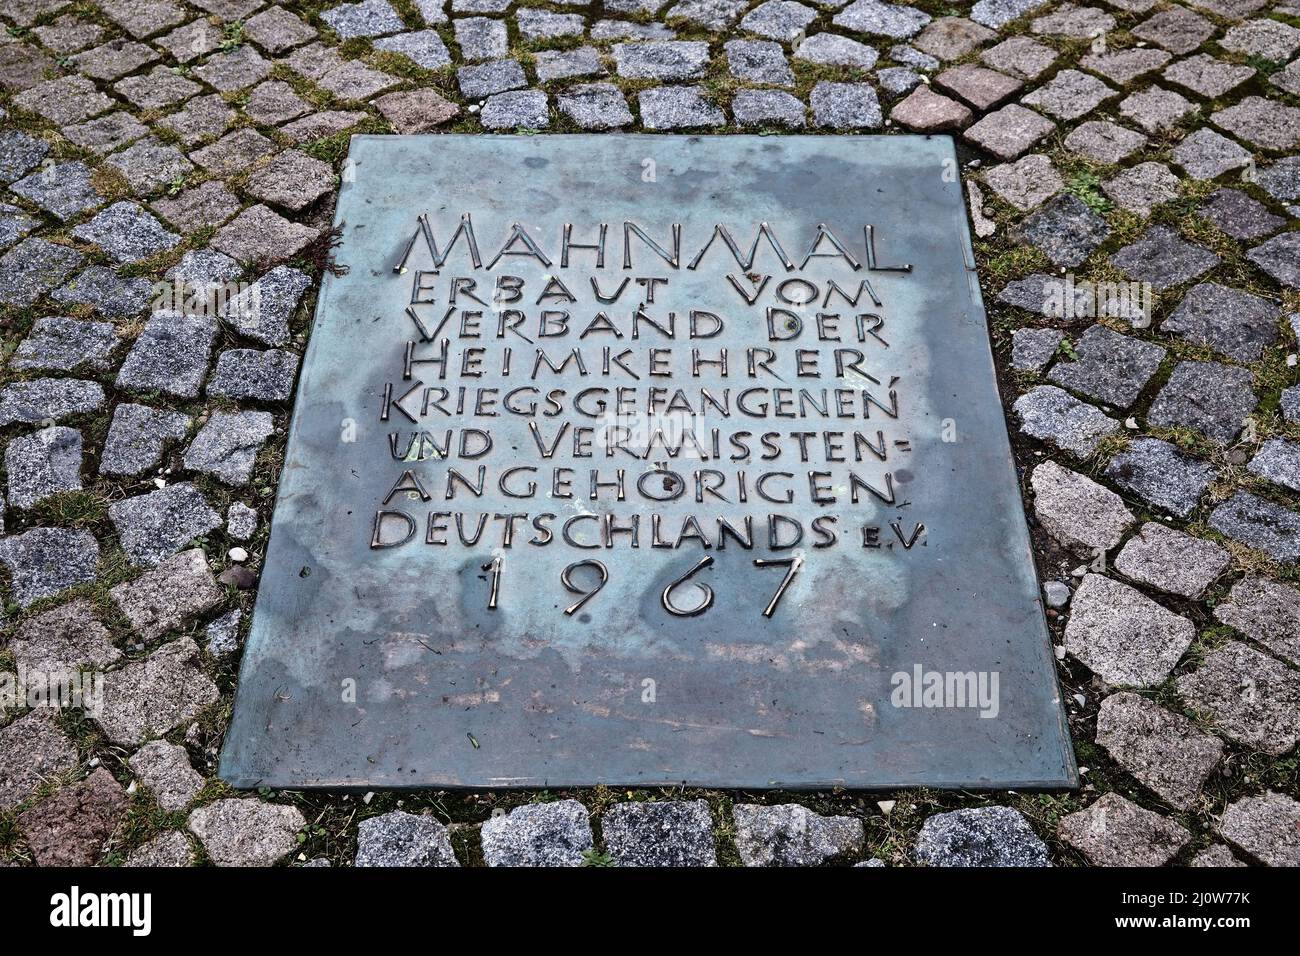 Friedland Memorial para los repatriados y expulsados alemanes, detalle, Friedland, Alemania, Europa Foto de stock